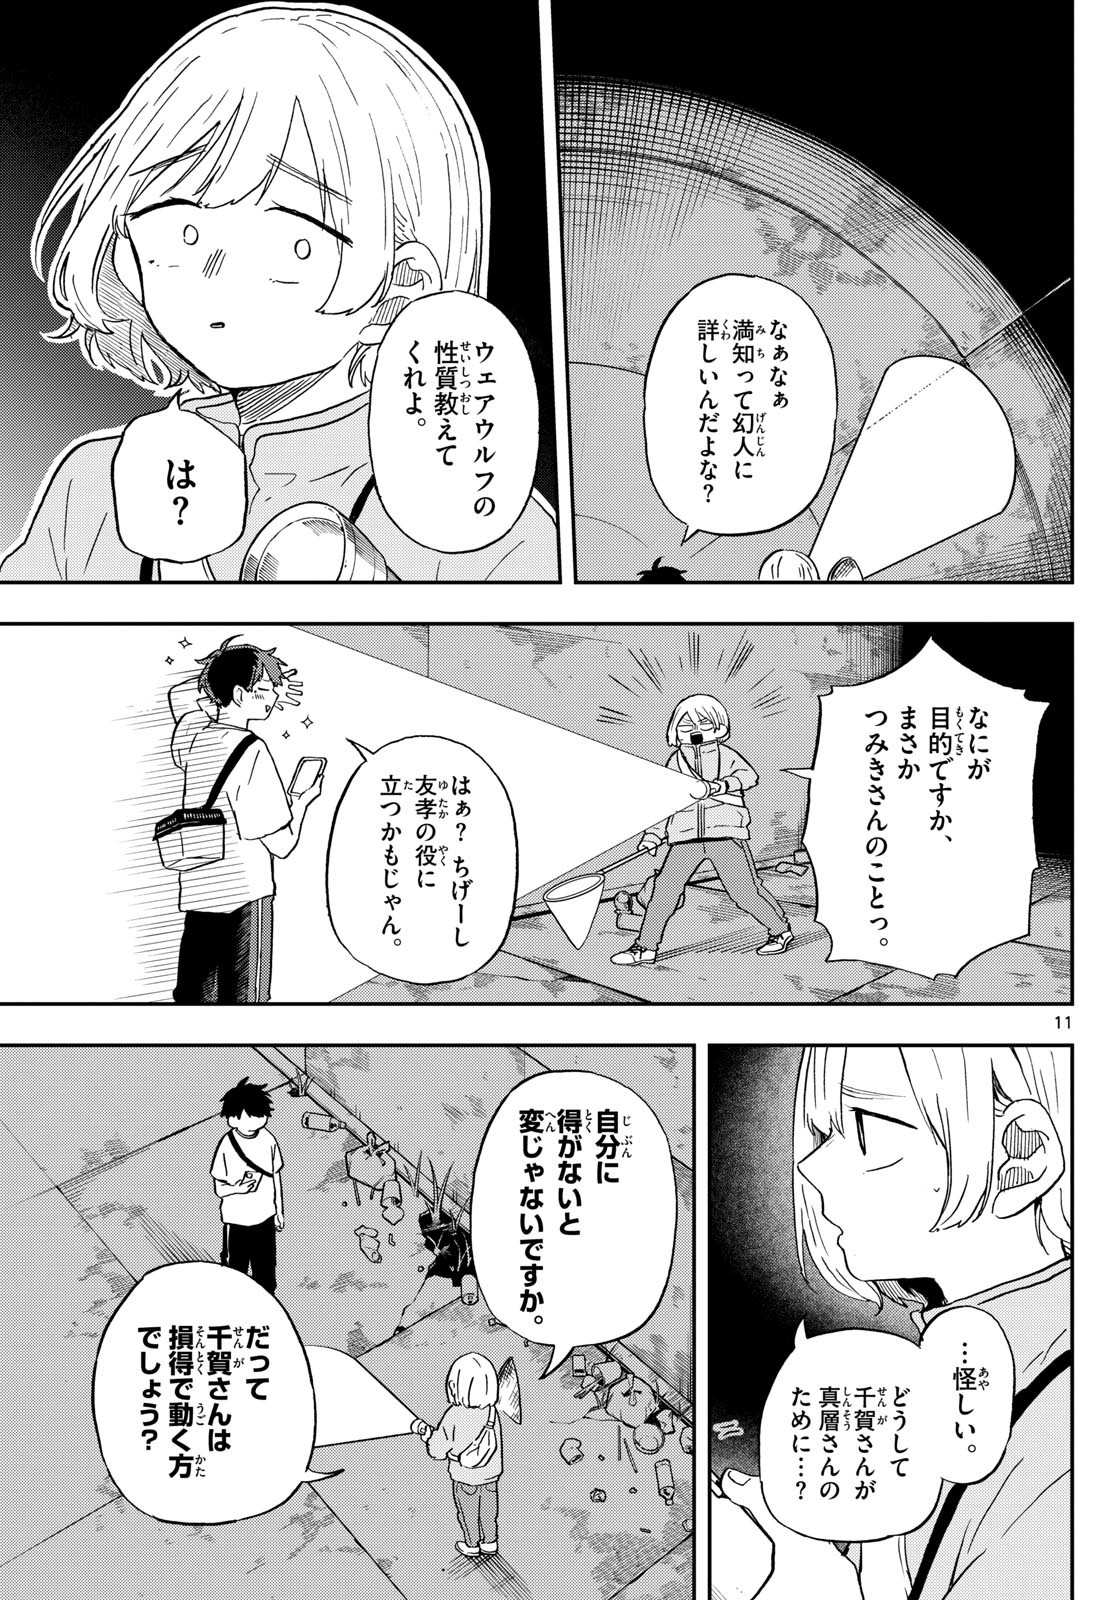 Omori Tsumiki to Kinichijou. - Chapter 23 - Page 11